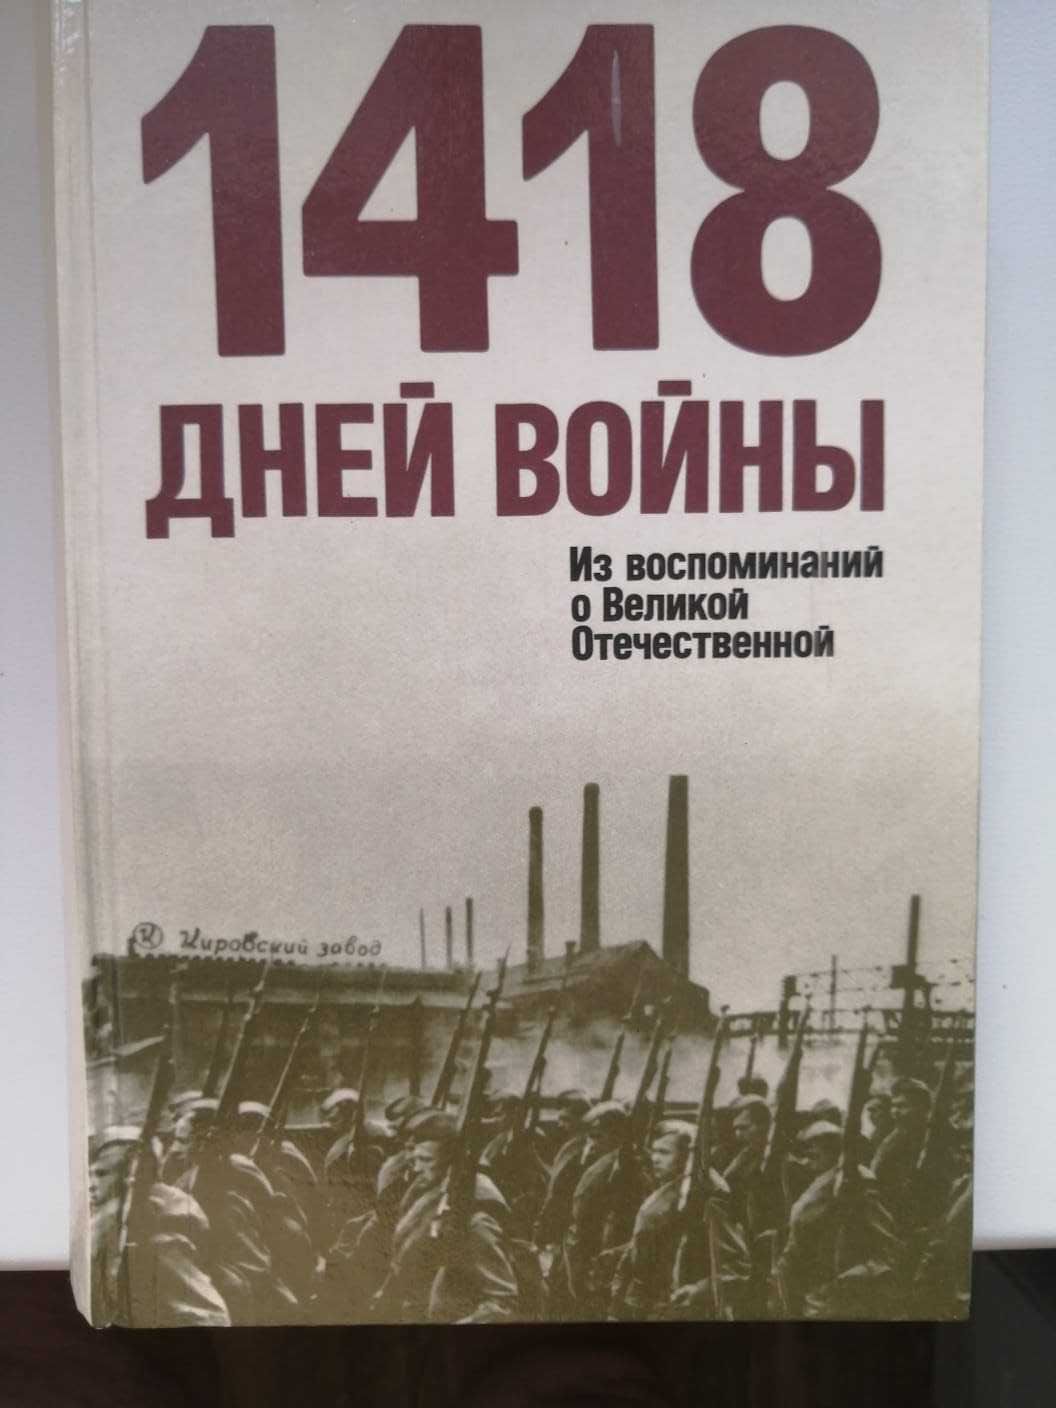 1418 дней войны Из воспоминаний о Великой Отечественной войне